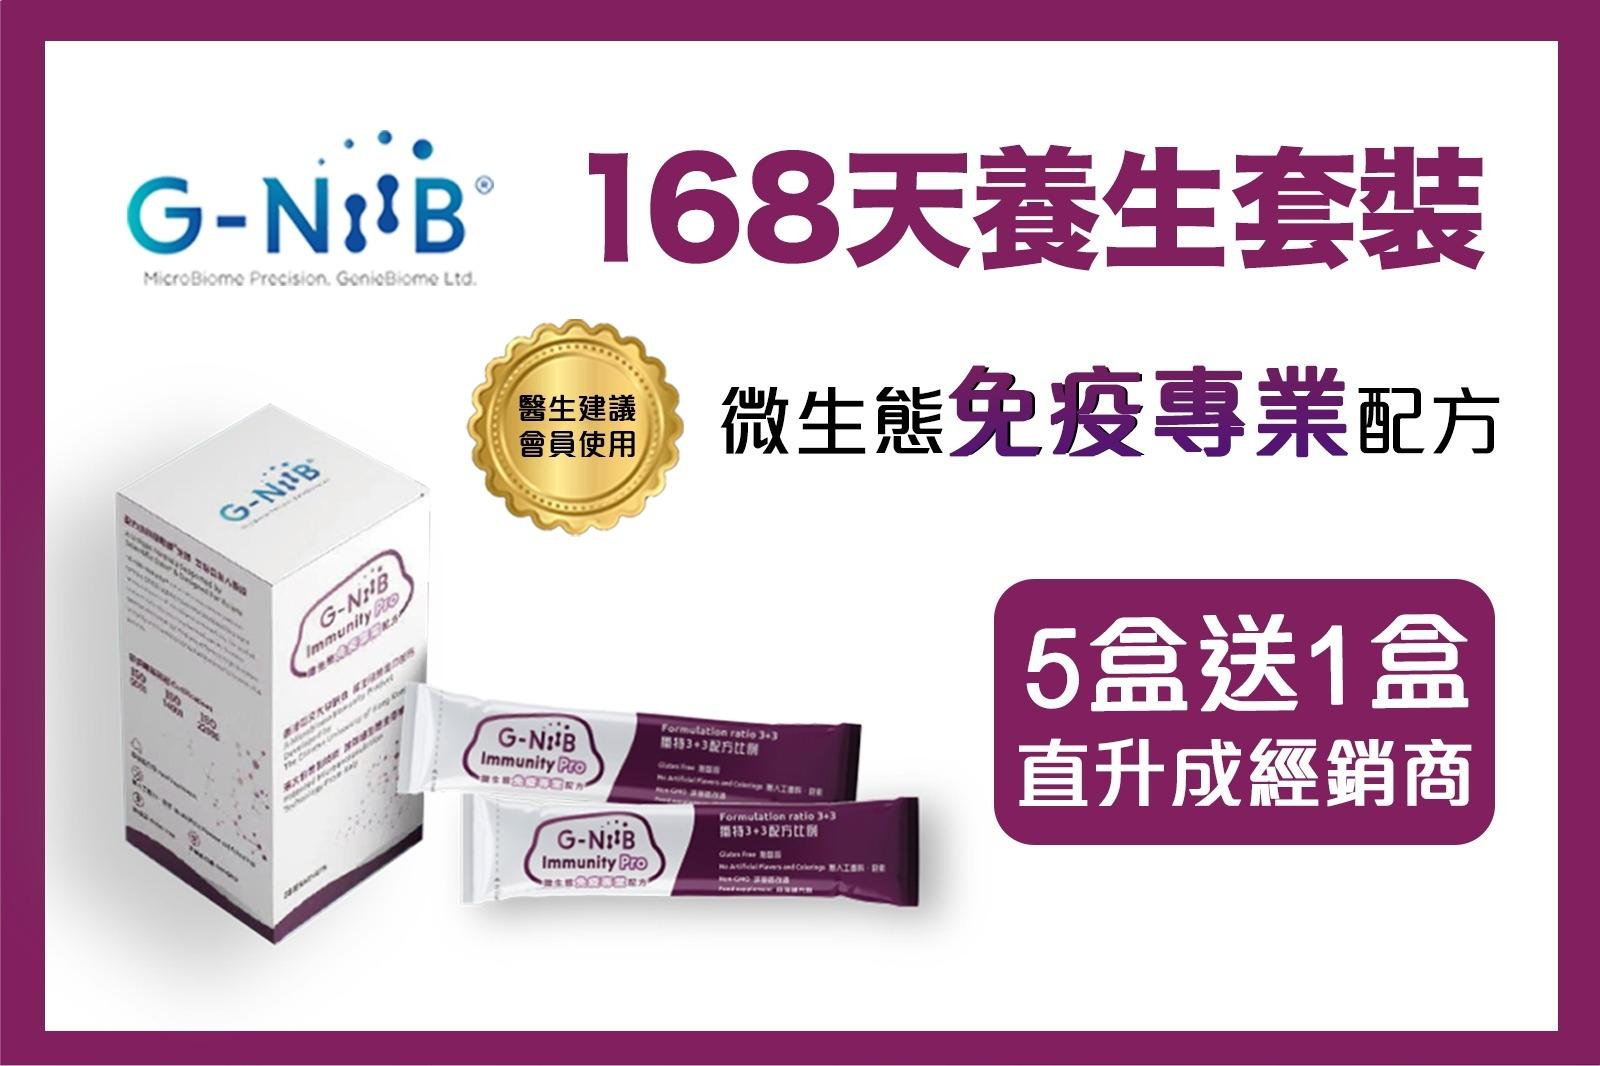 「G-NiiB 免疫Pro 」配方 168天養生套裝